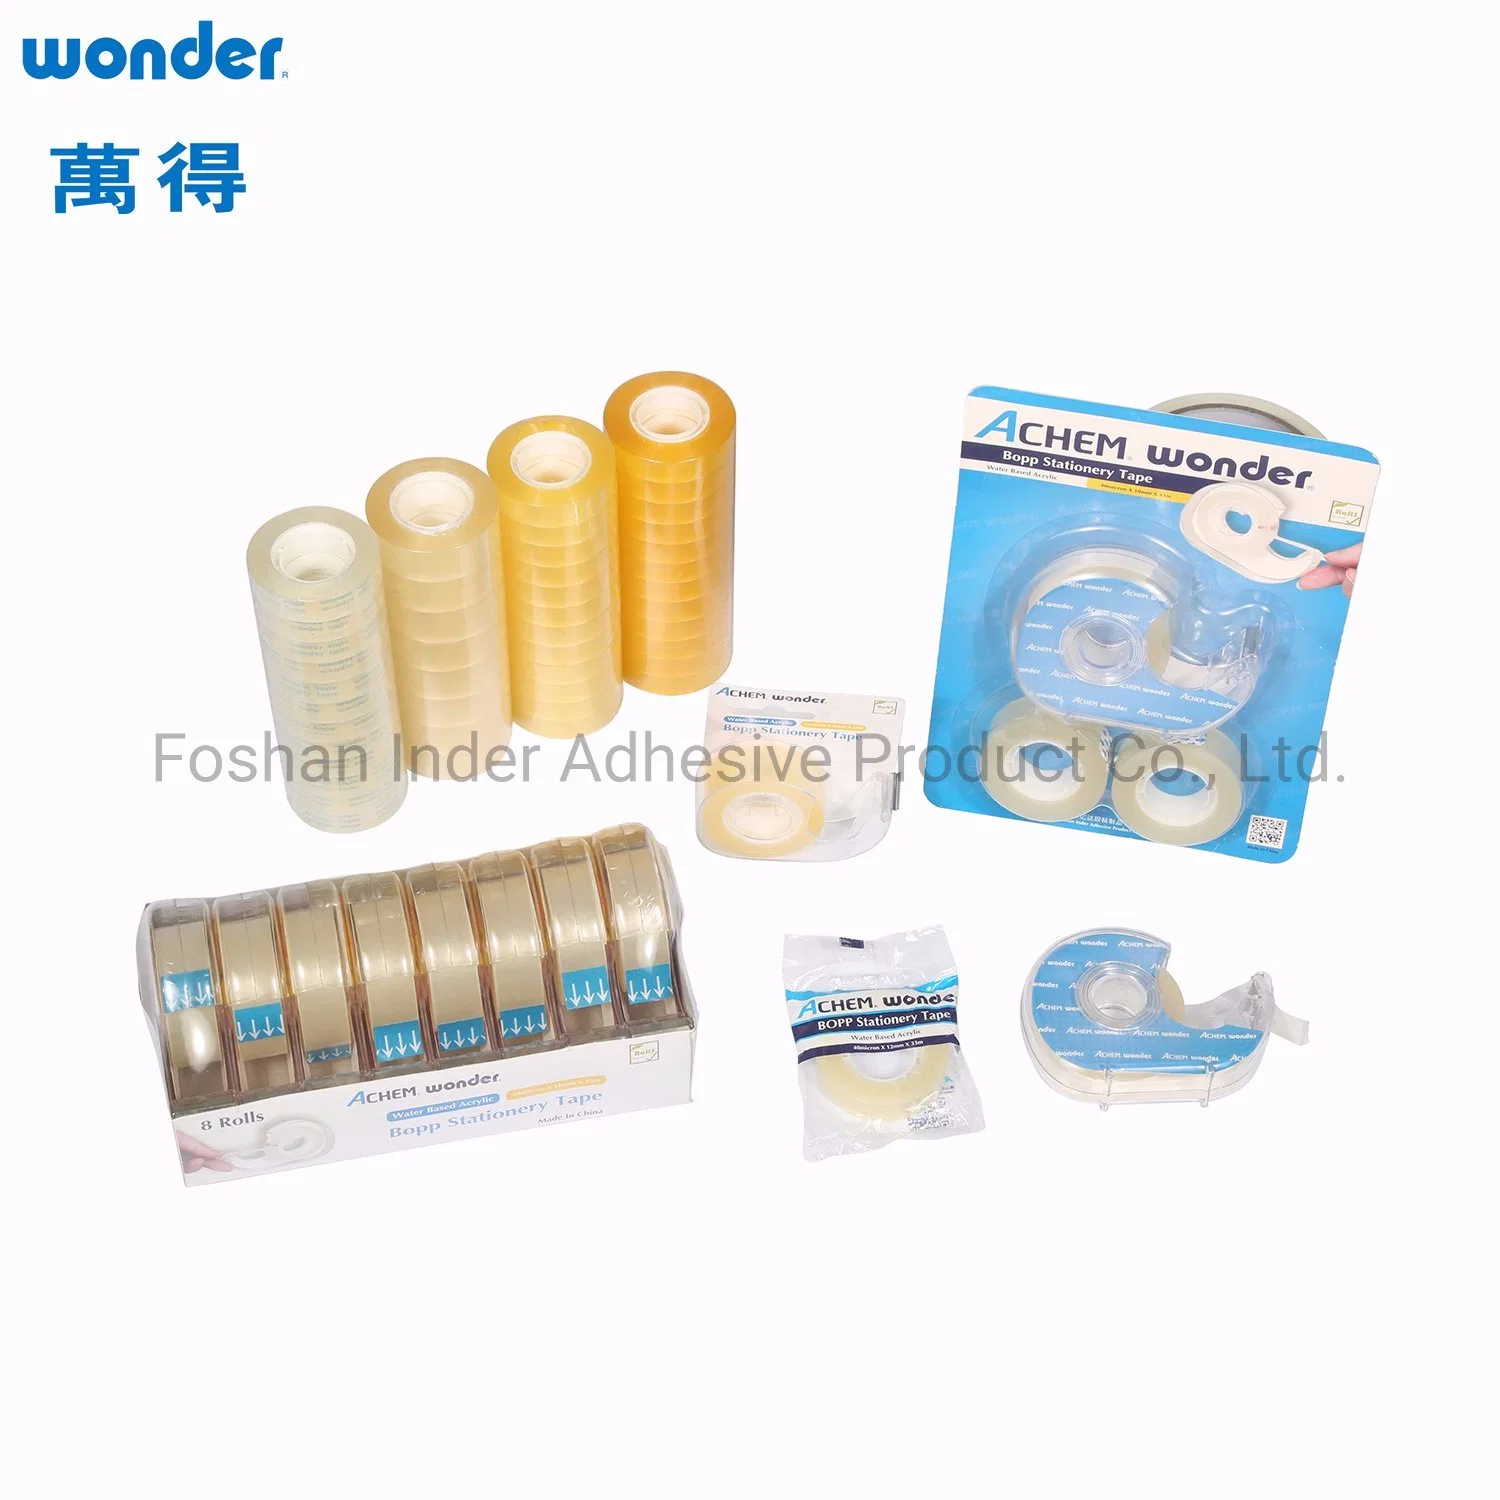 *Wonder Brand* Hot Sale Stationery BOPP Tape // Tape Dispenser / BOPP Tape Cutter for Office